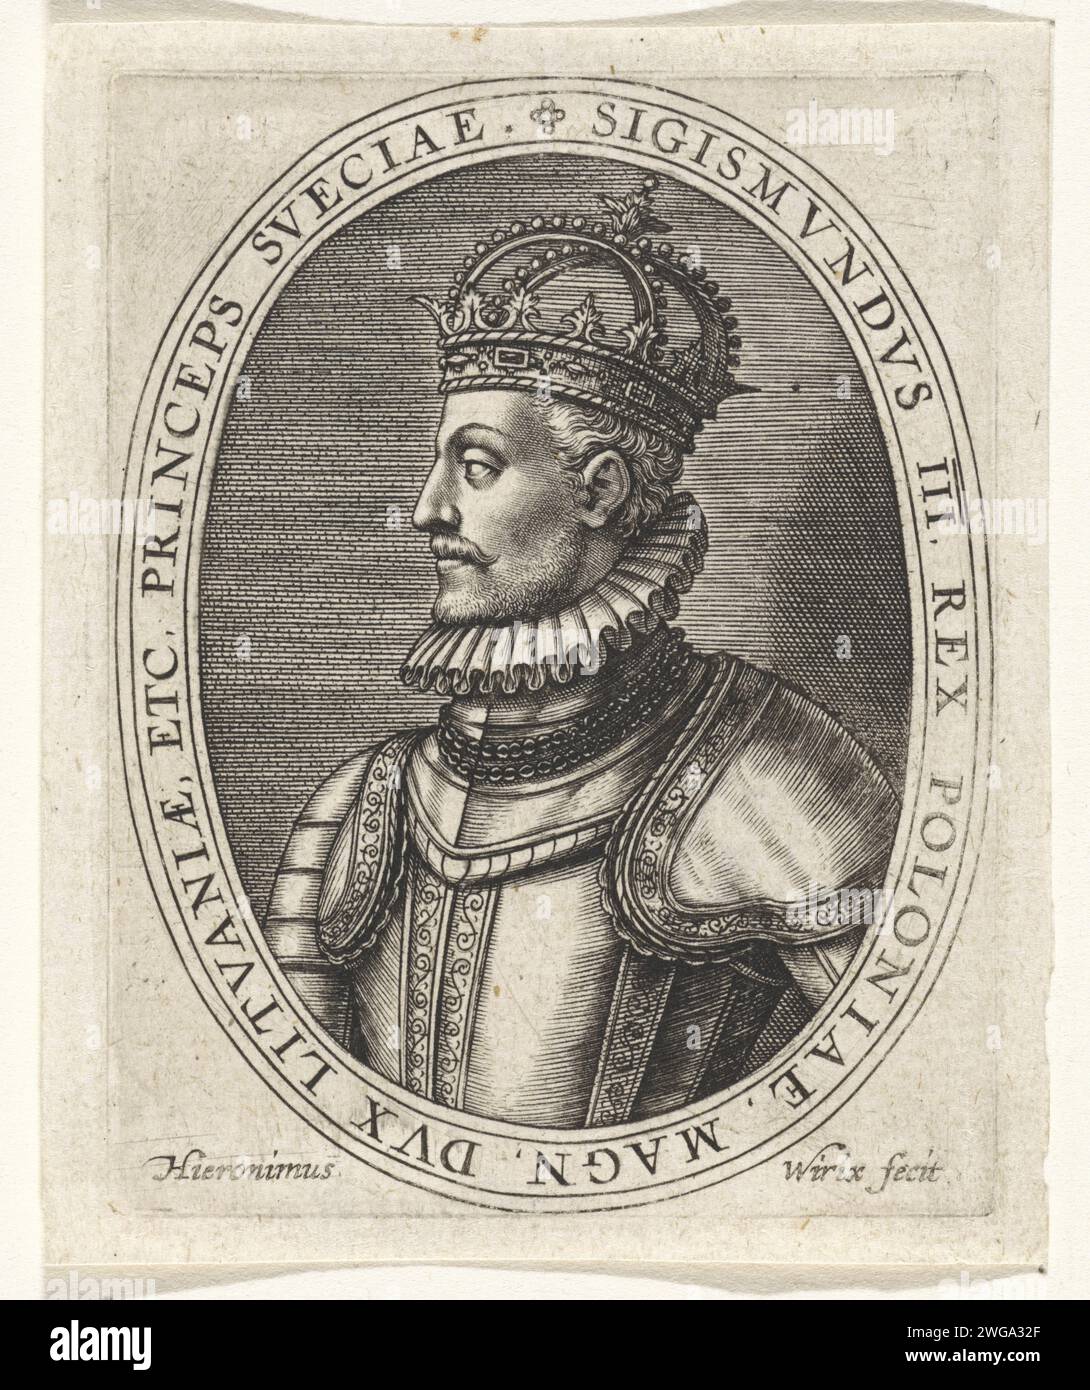 Ritratto di Sigismondo III, re di Polonia e Svezia, Hieronymus Wierix, 1563 - prima del 1619 è stato incoronato e indossa un'armatura. Armatura per incisione in carta Anversa. corona (simbolo di sovranità) Foto Stock